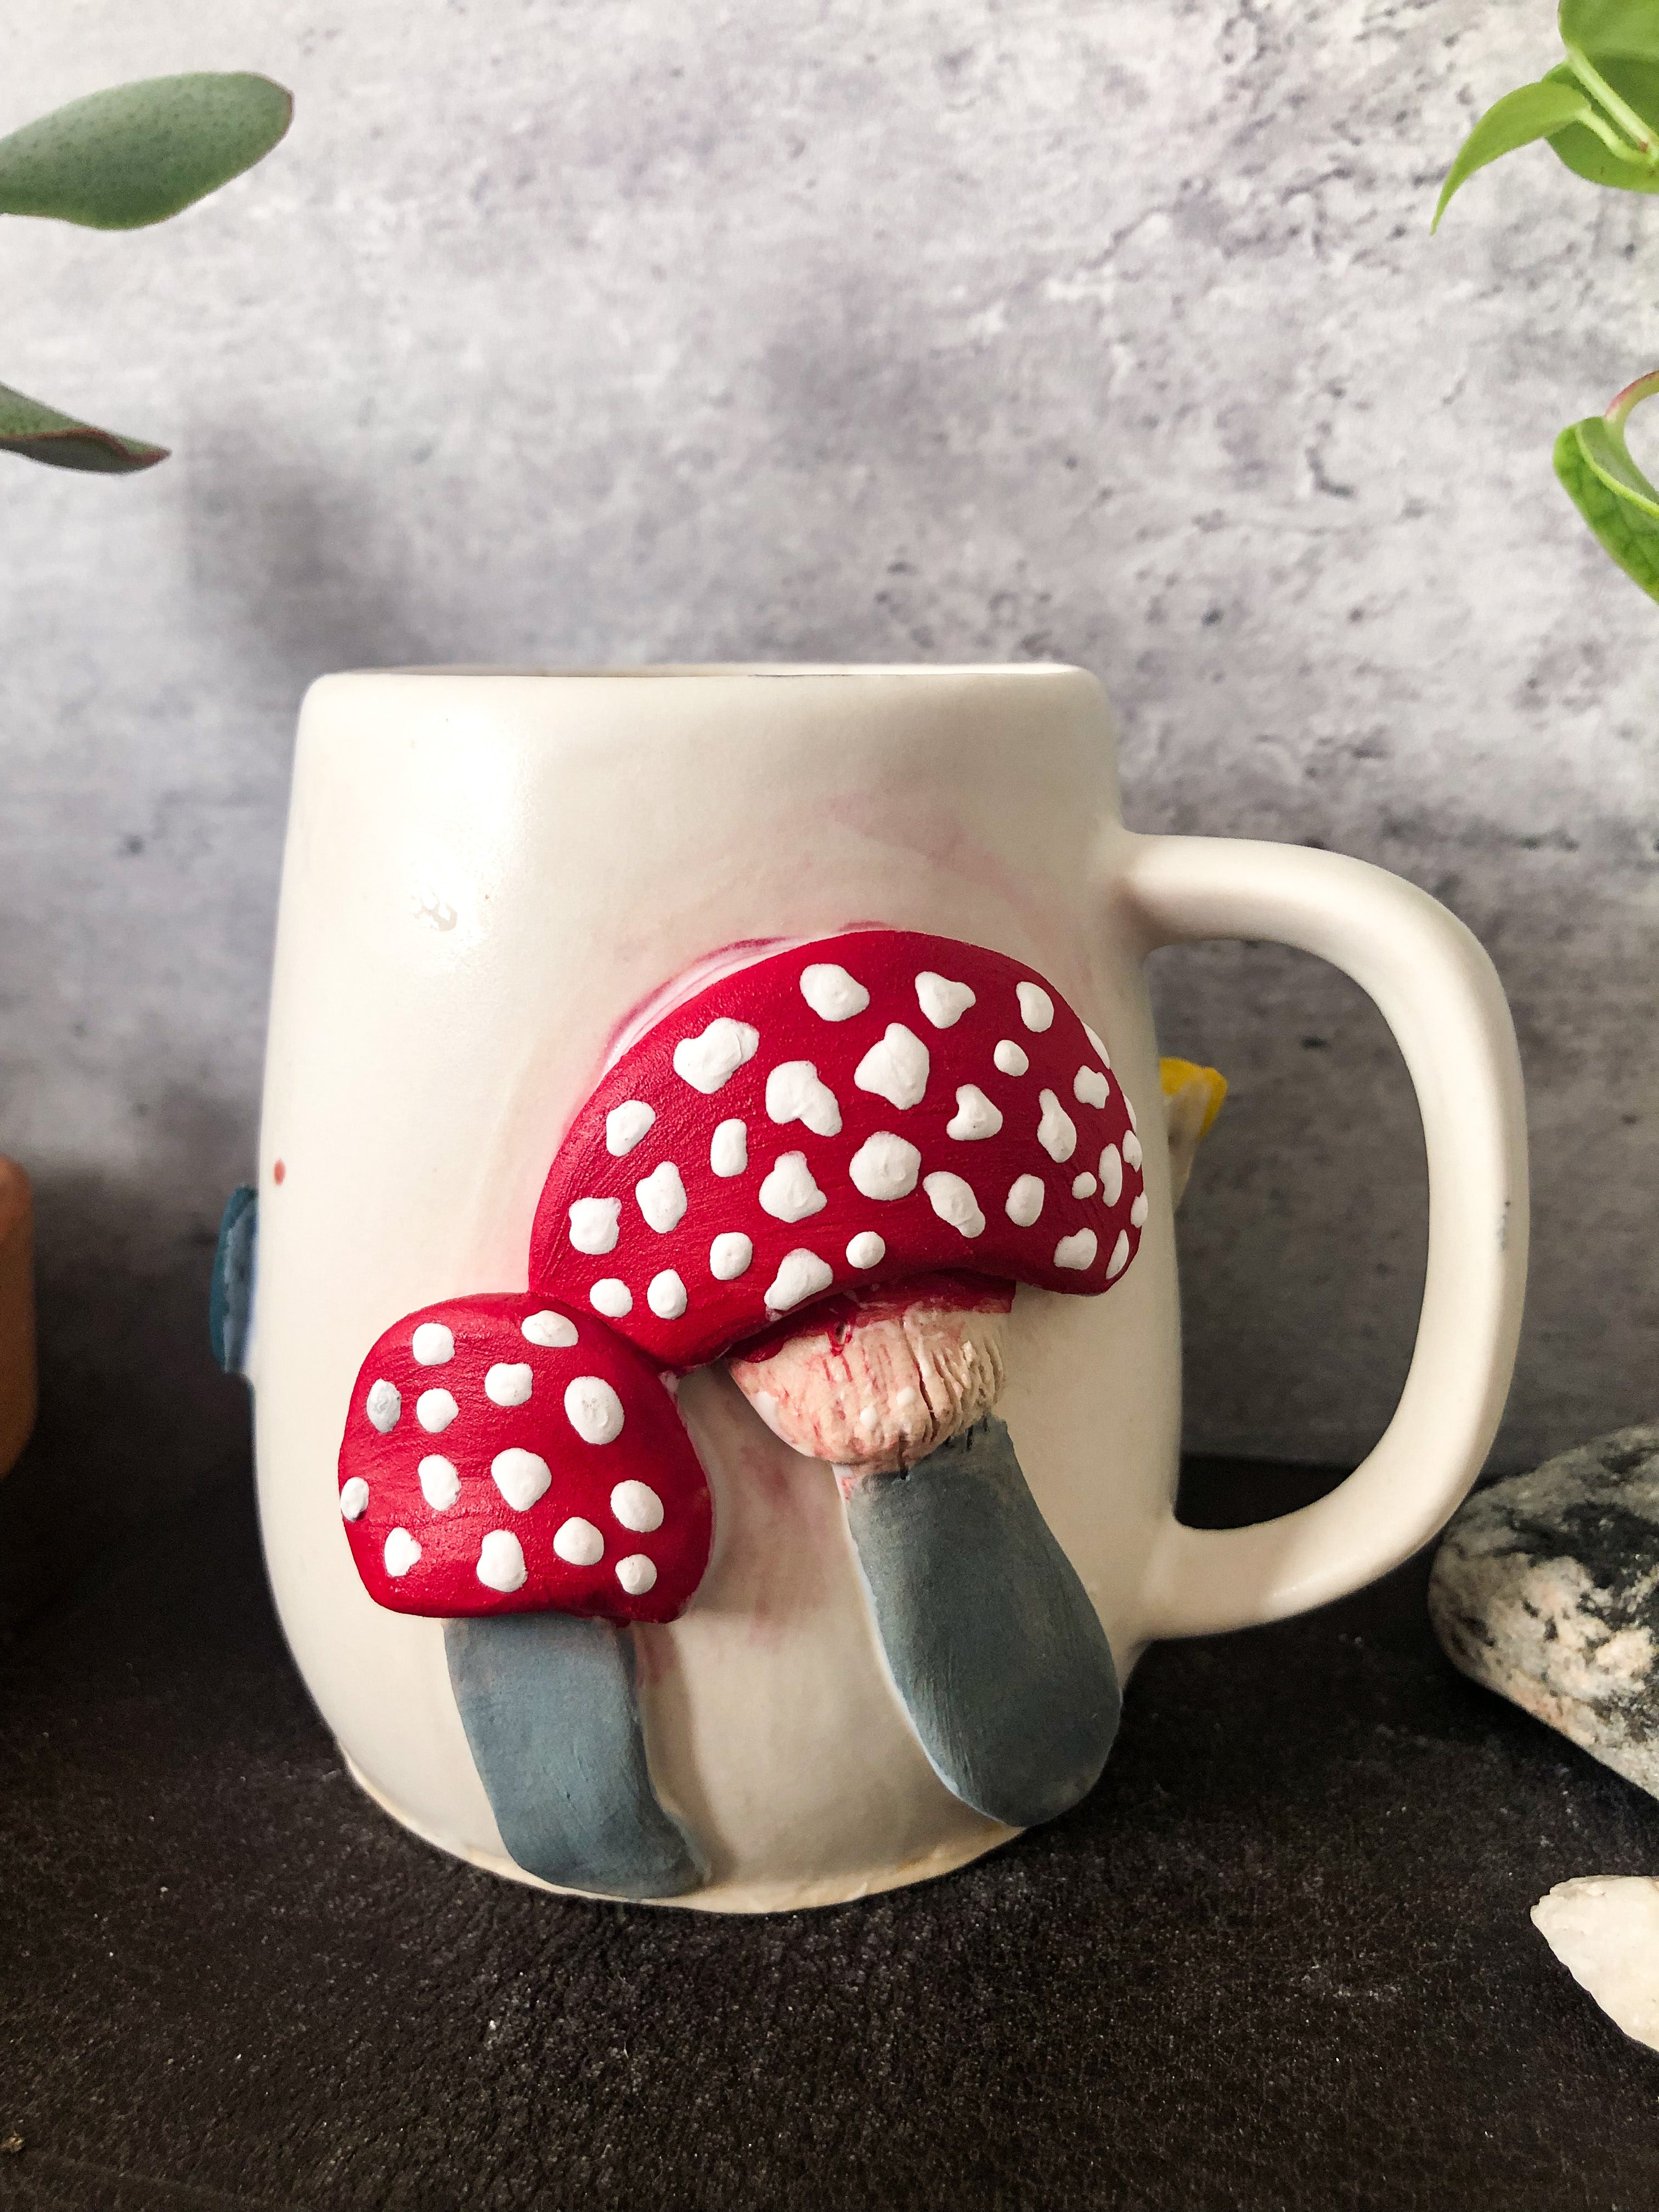 mushroom species mug - chanterelle on the left